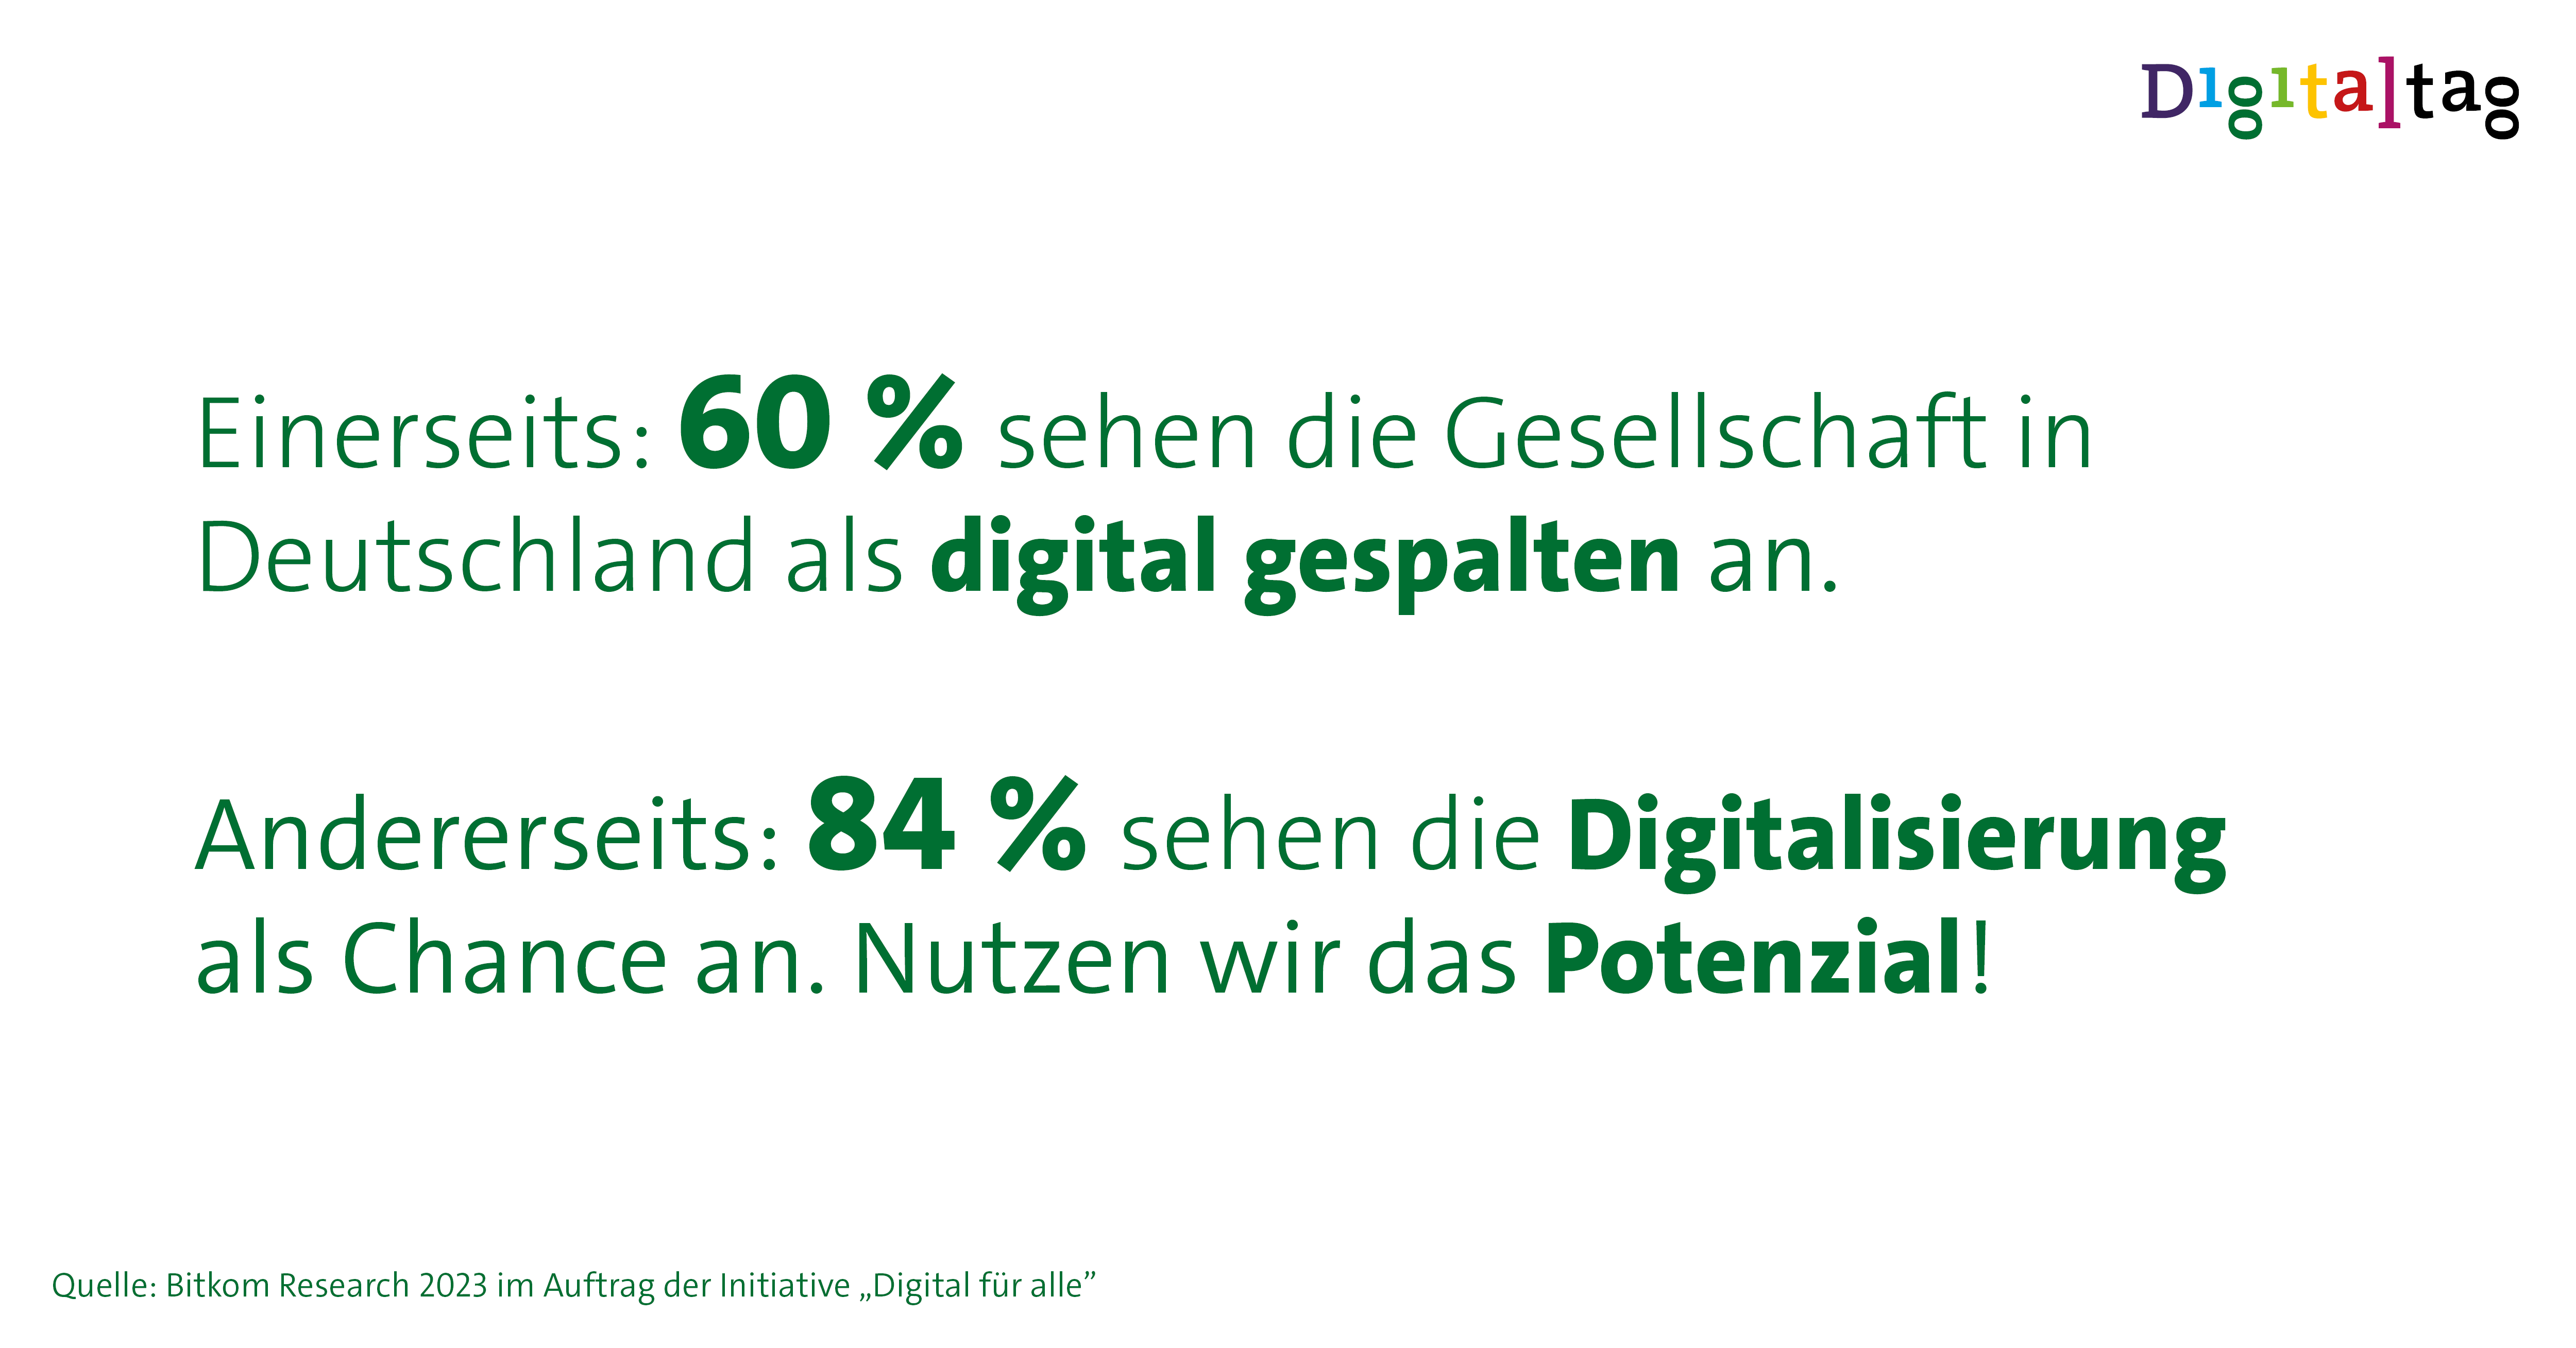 Einerseits: 60 % sehen die Gesellschaft in Deutschland als digital gespalten an. Andererseits: 84 % sehen die Digitalisierung als Chance an. Nutzen wir das Potenzial! Quelle: Bitkom Research 2023 im Auftrag der Initiative „Digital für alle”